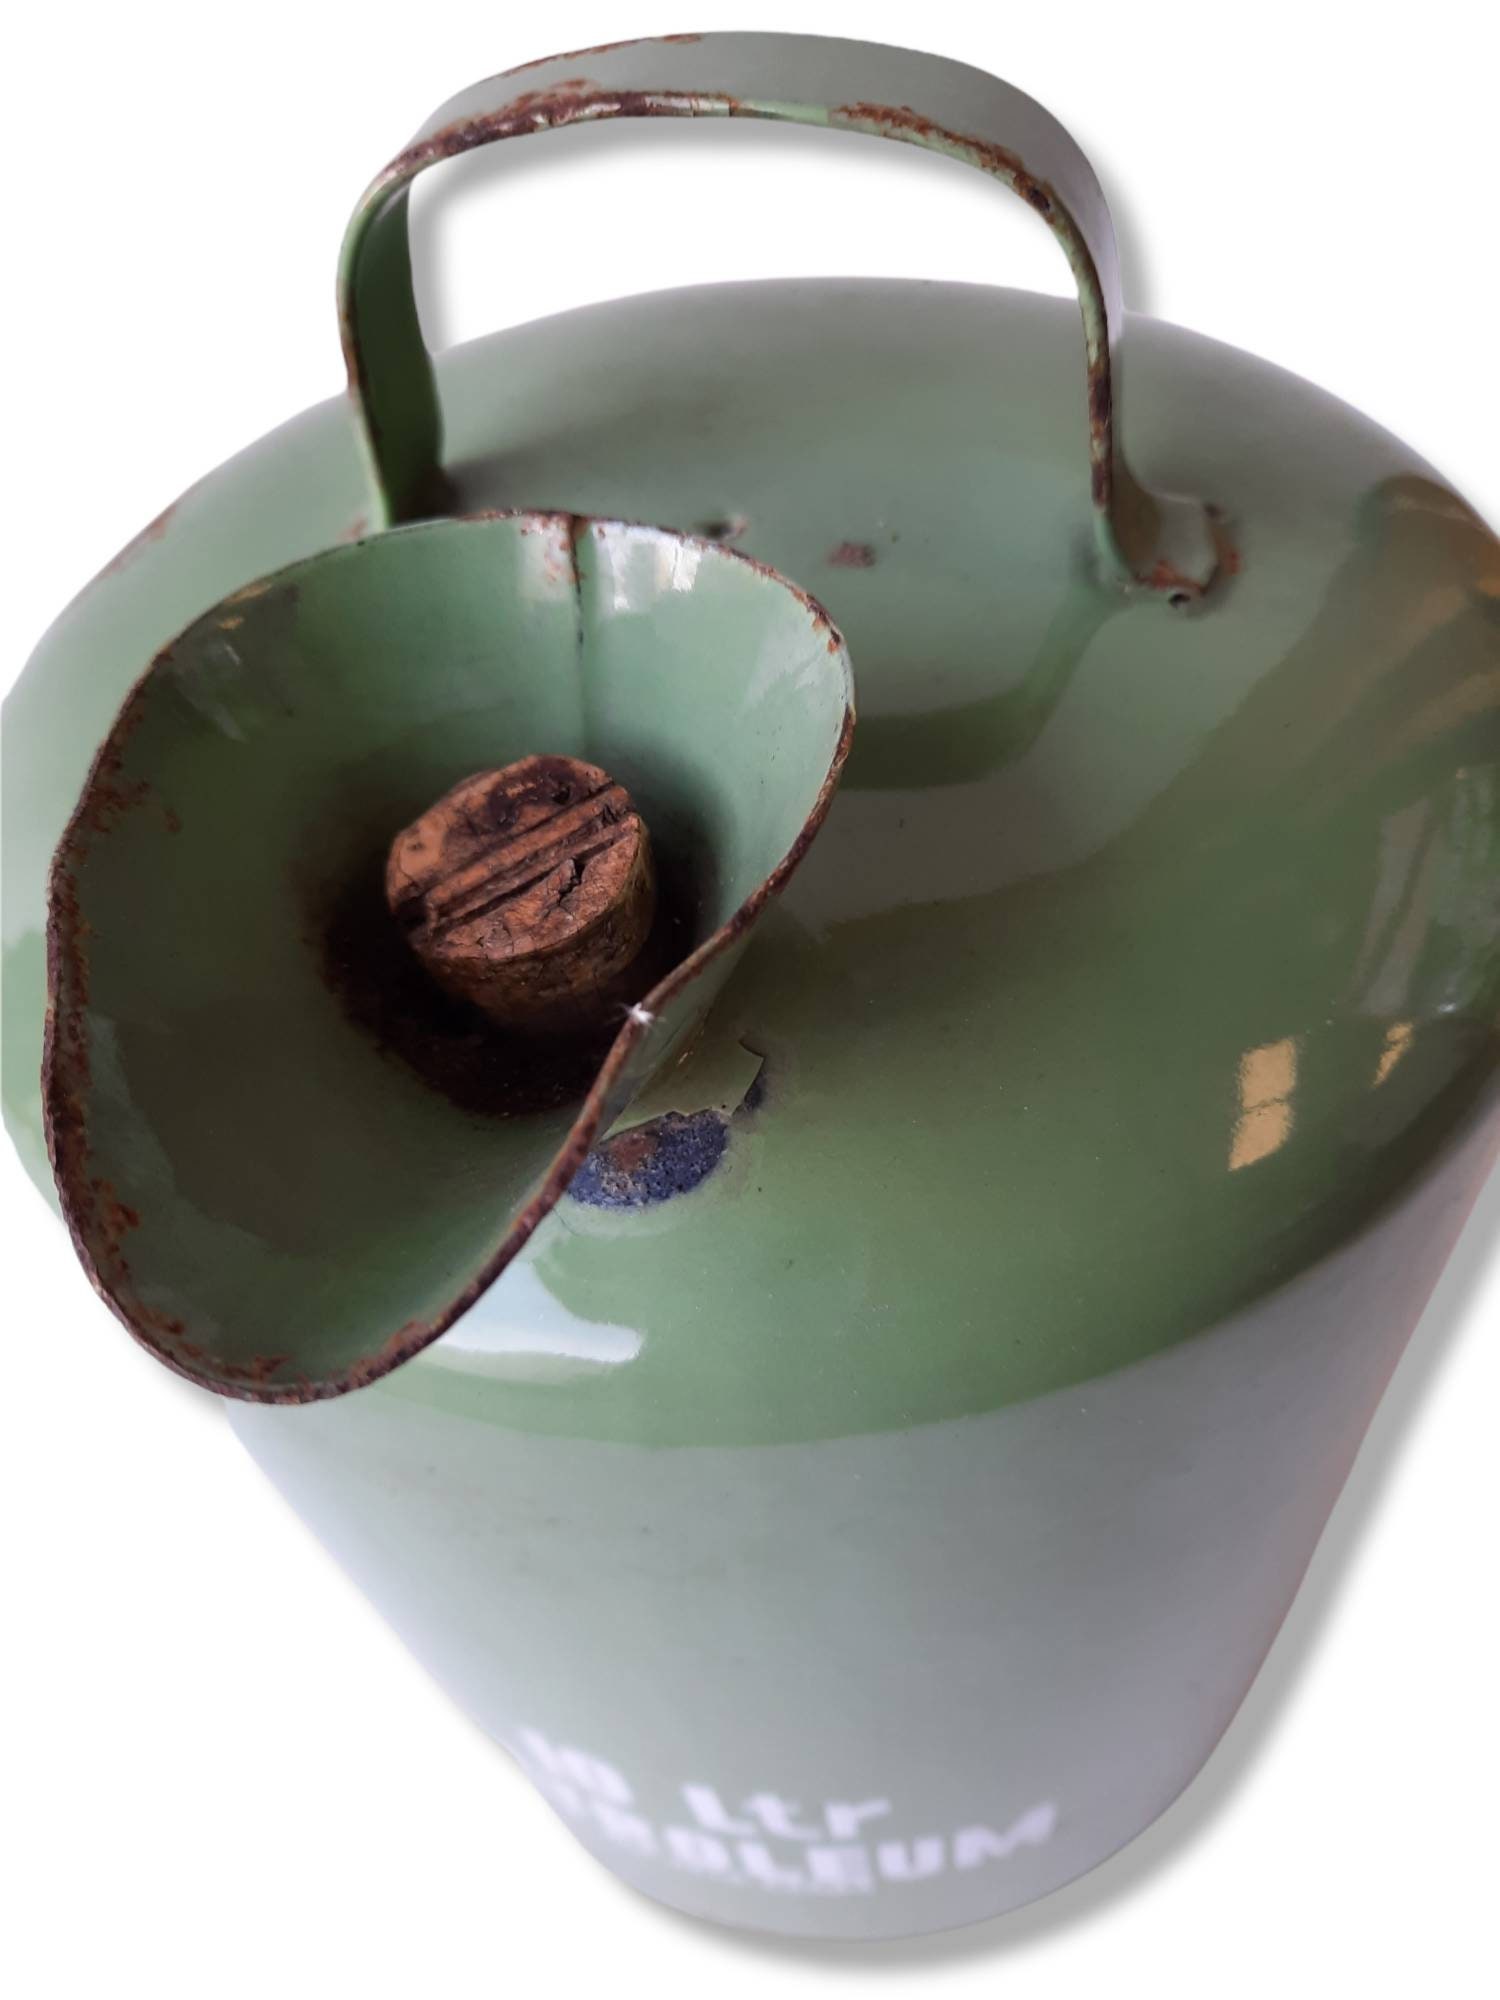 Vintage petroleum jug 10 liters 50s/60s green enamel